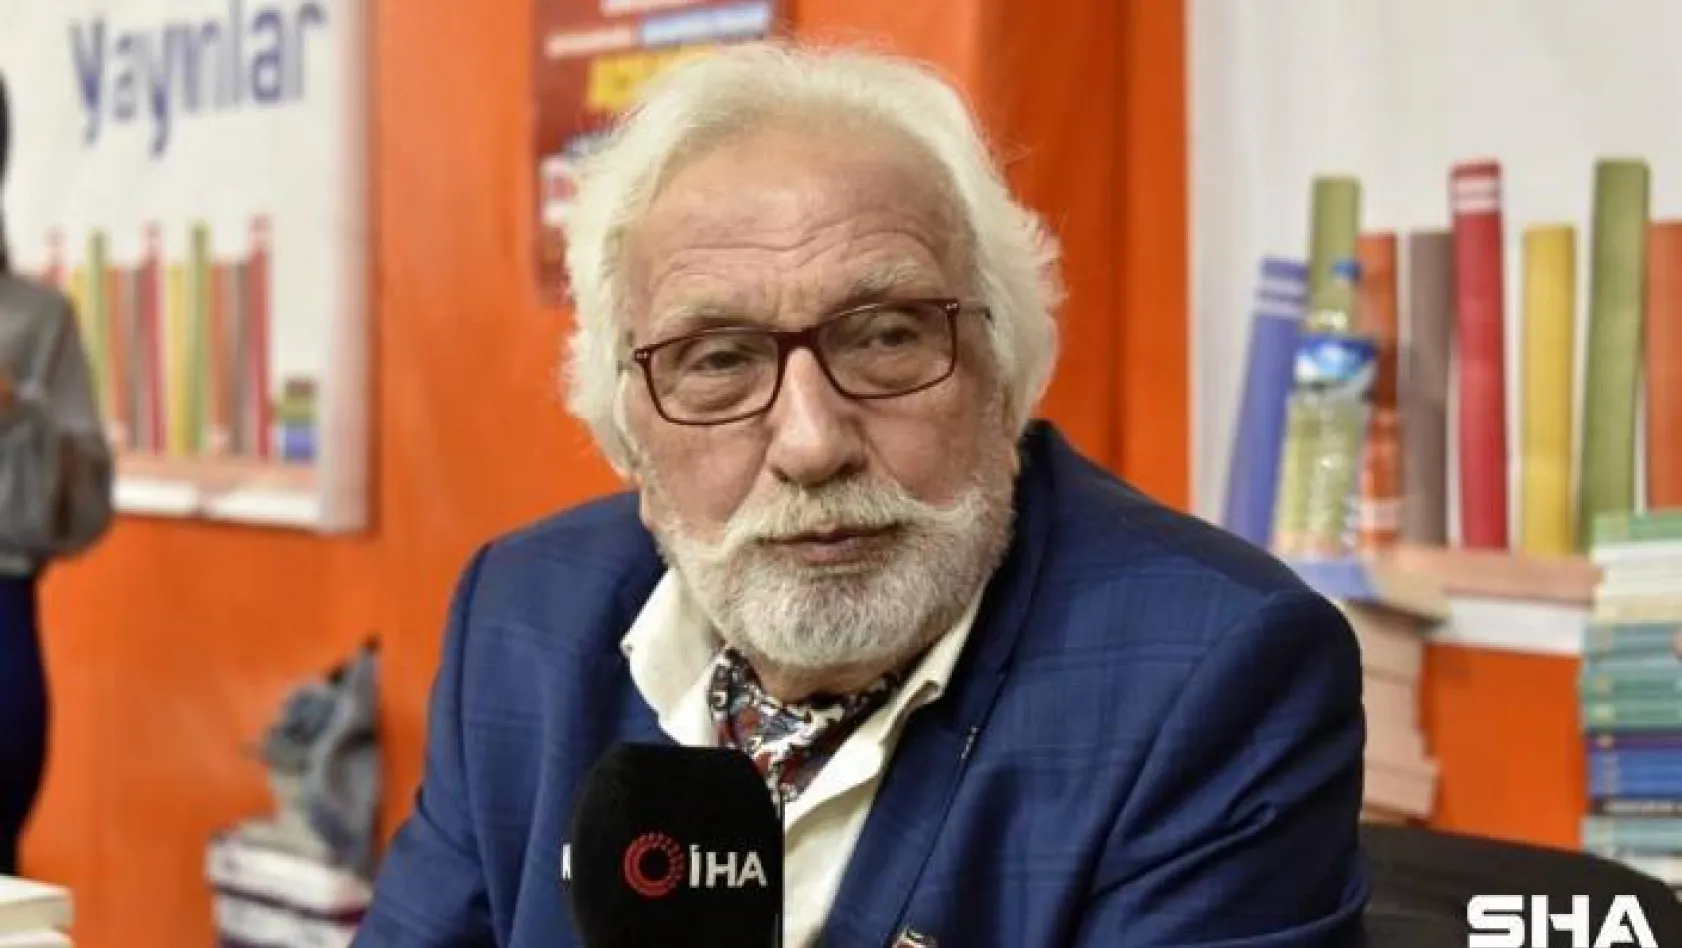 Ünlü tarihçi yazar Yavuz Bahadıroğlu hayatını kaybetti